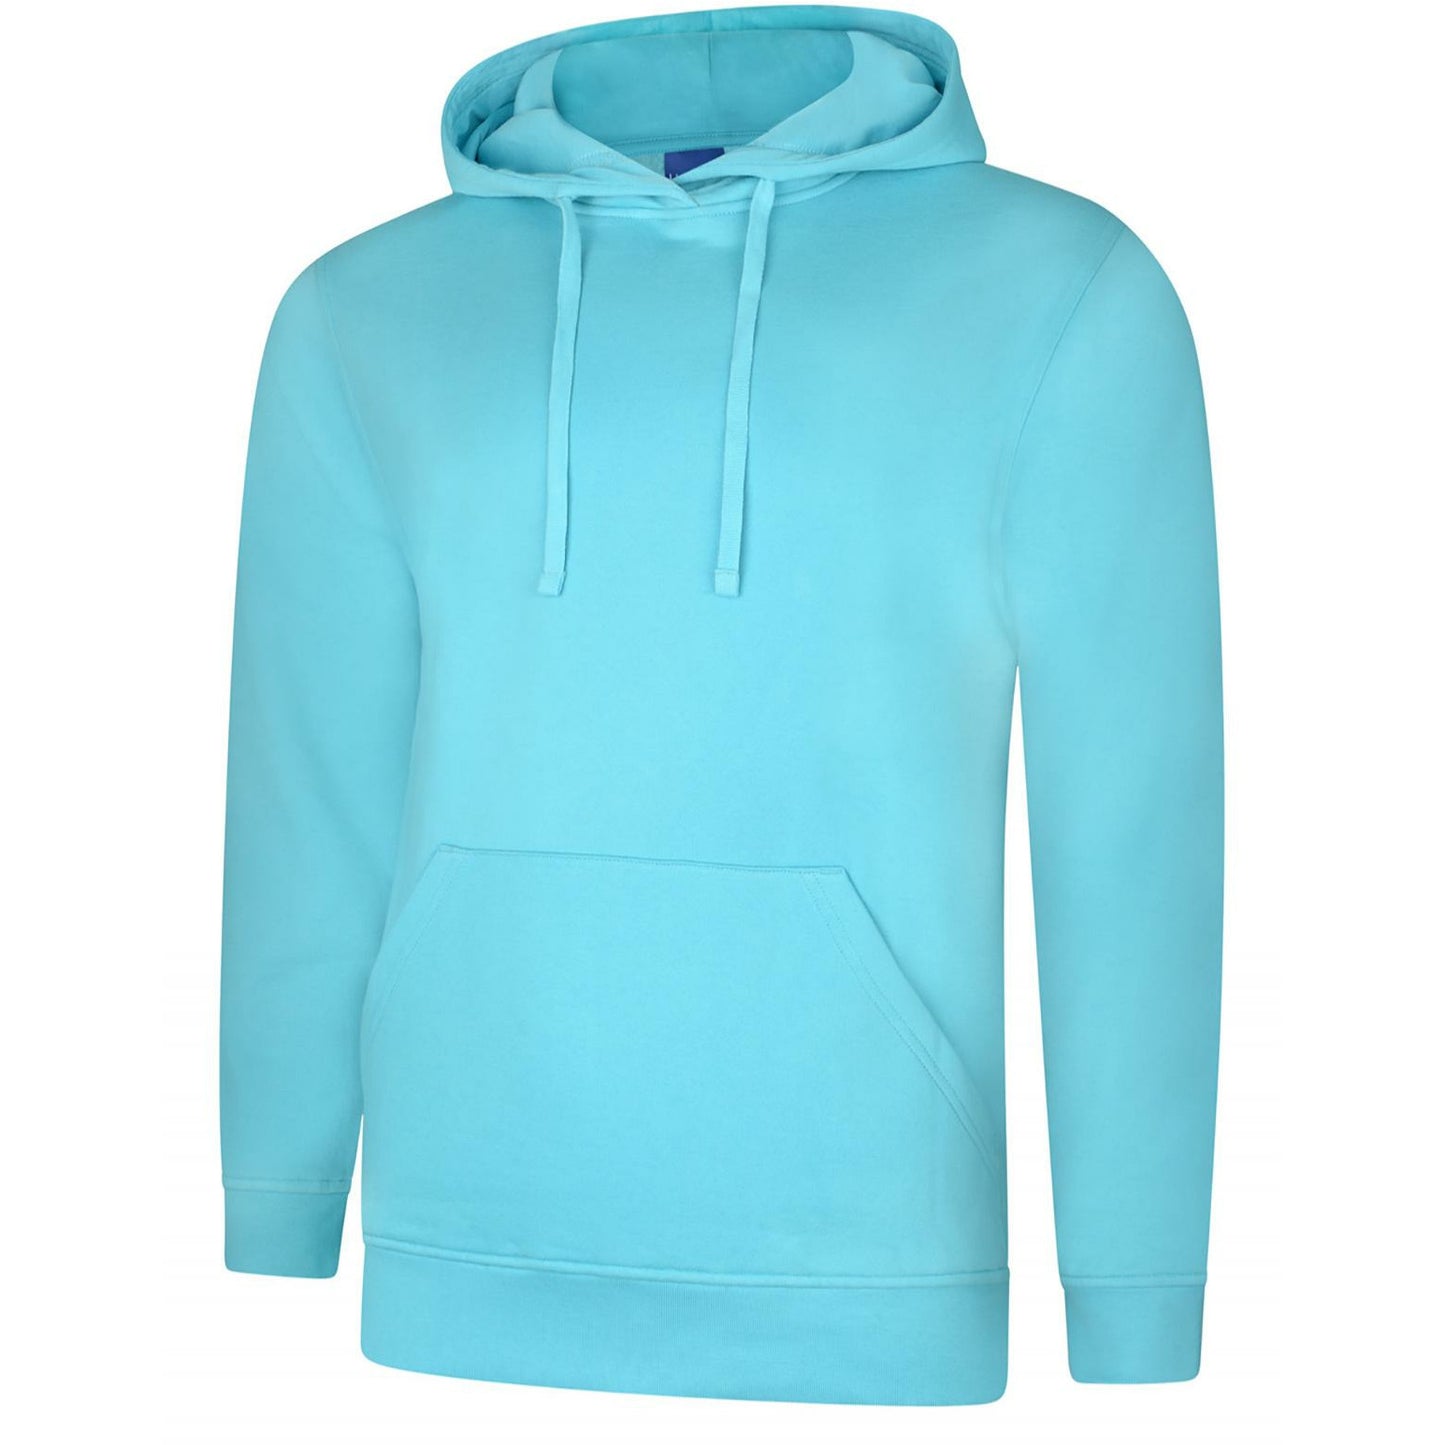 Deluxe Hooded Sweatshirt (XS - M) Turquoise 